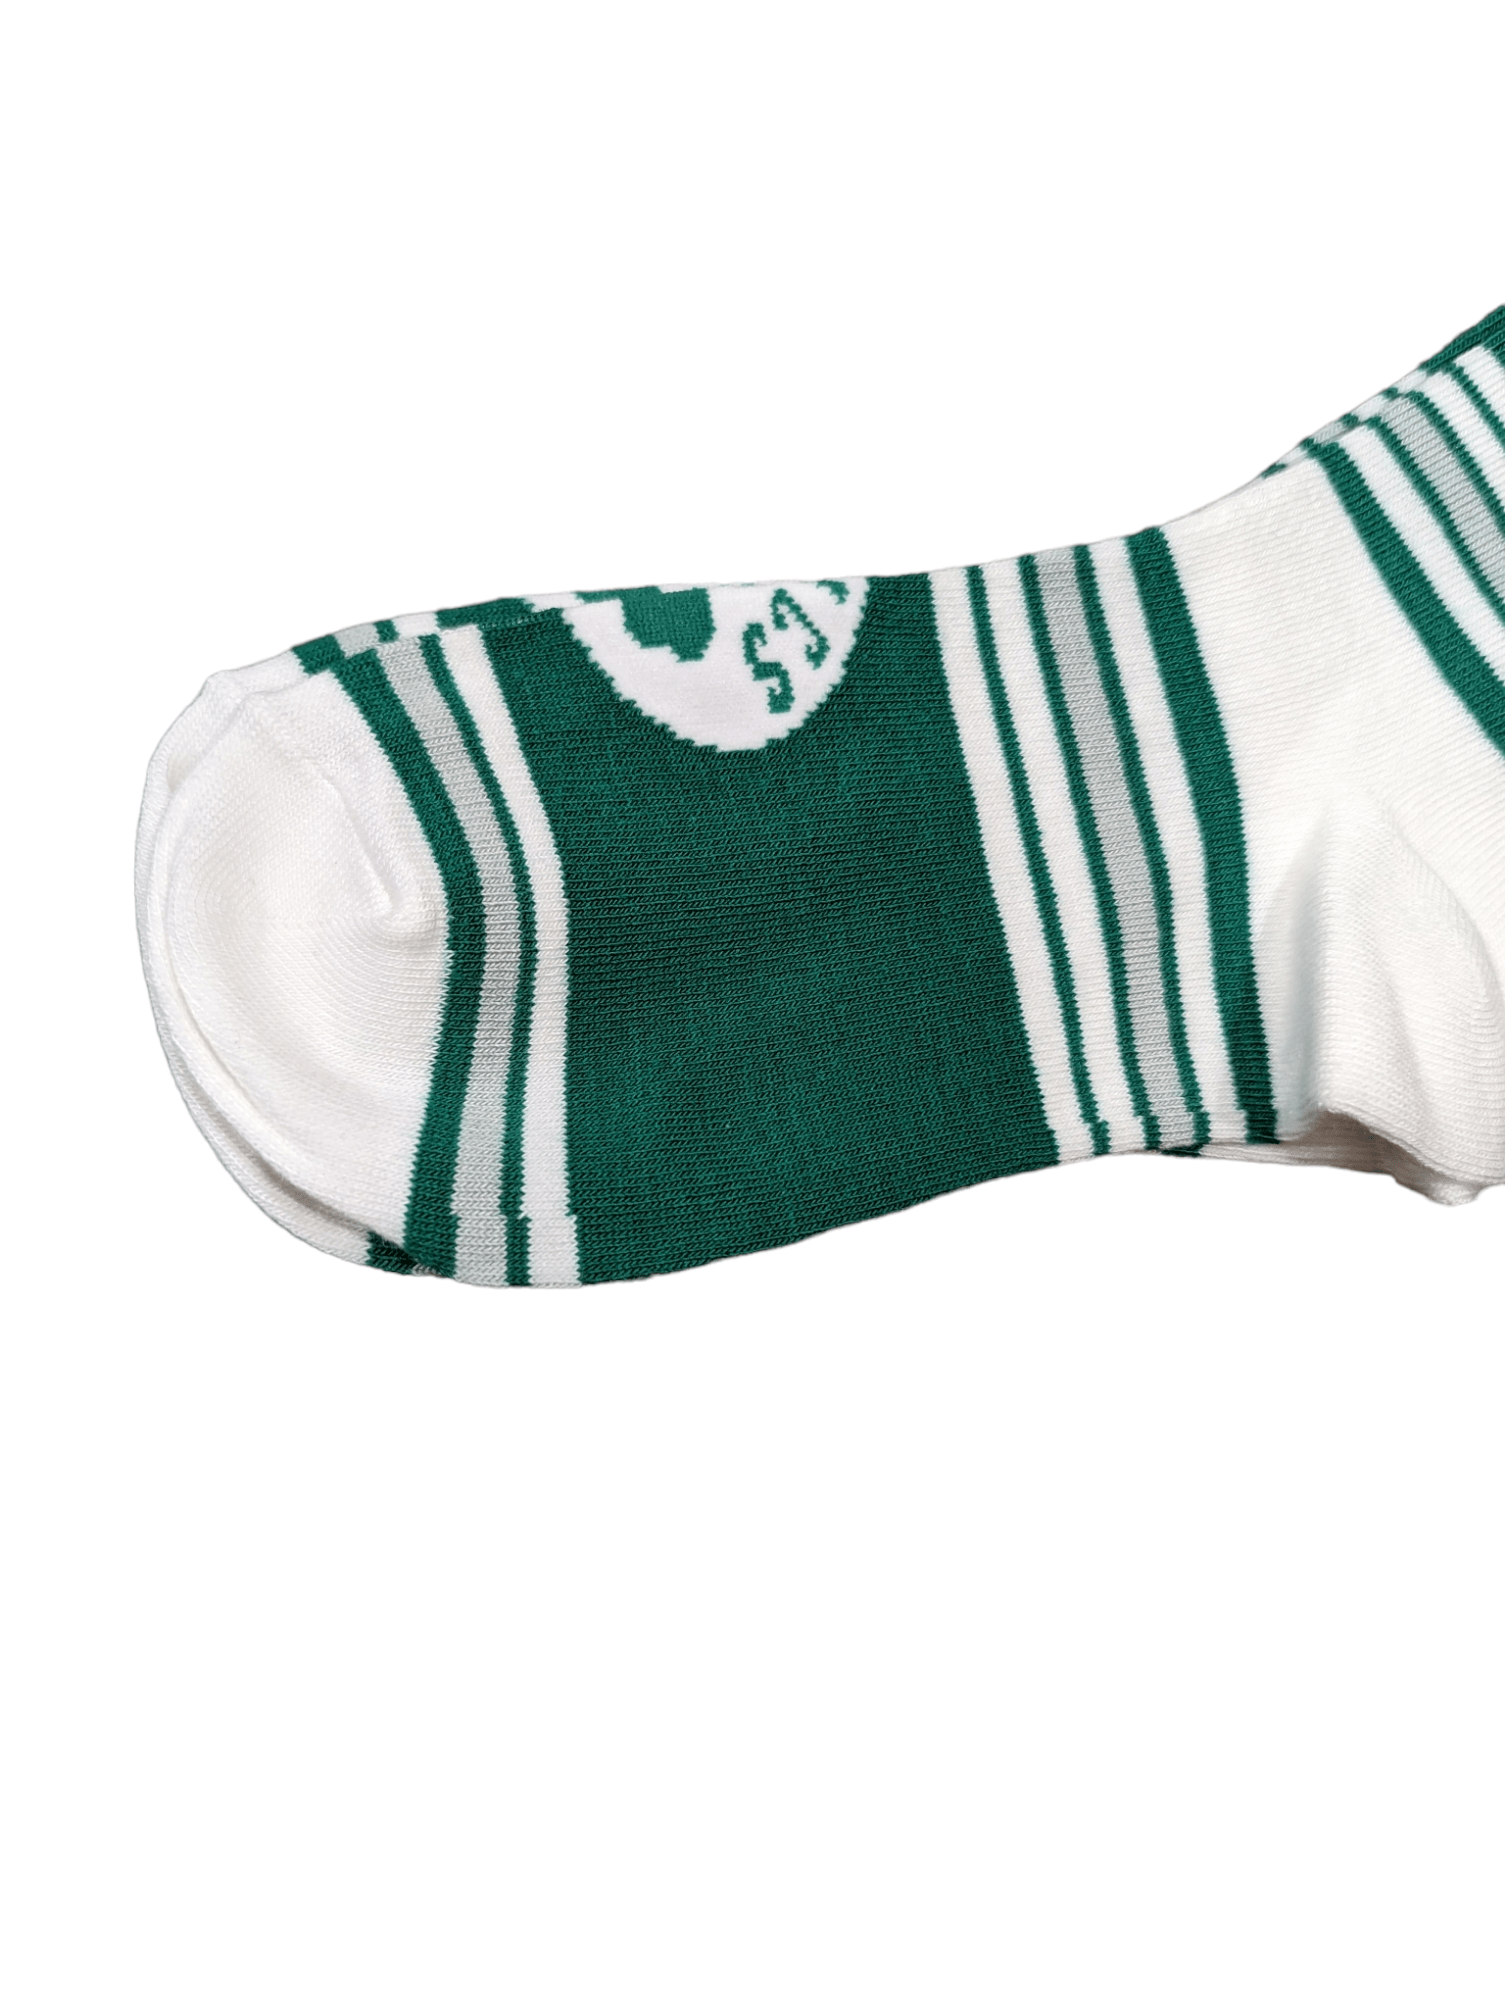 For Bare Feet Socks Boston Celtics Go Team Socks